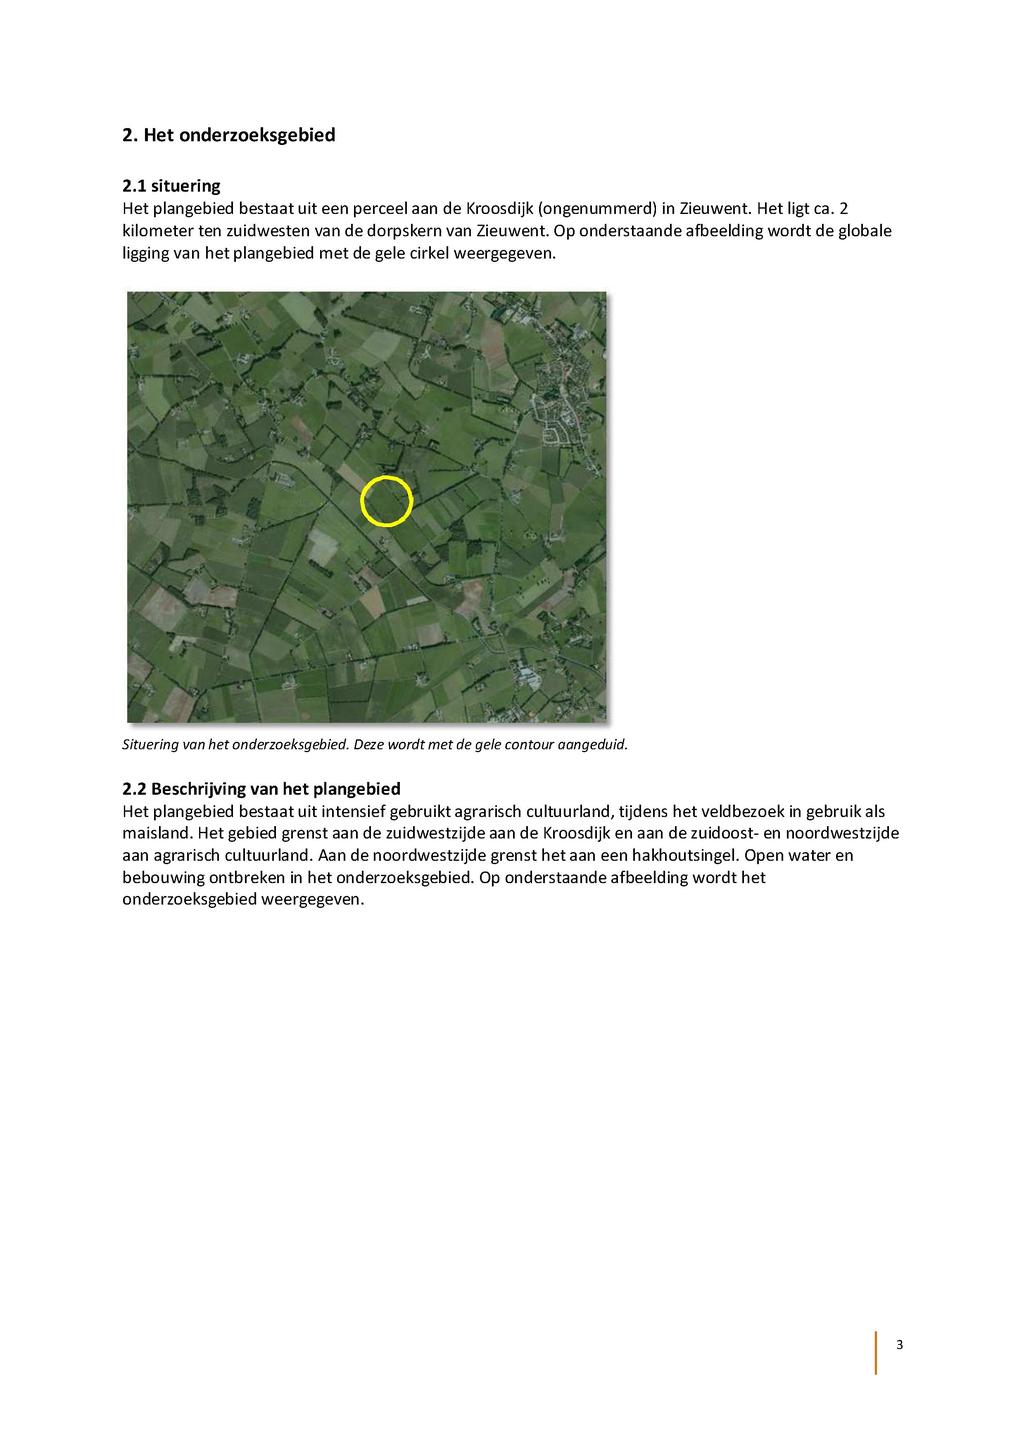 2. Het onderzoeksgebied 2.1 situering Het plangebied bestaat uit een perceel aan de Kroosdijk (ongenummerd) in Zieuwent. Het ligt ca. 2 kilometer ten zuidwesten van de dorpskern van Zieuwent.